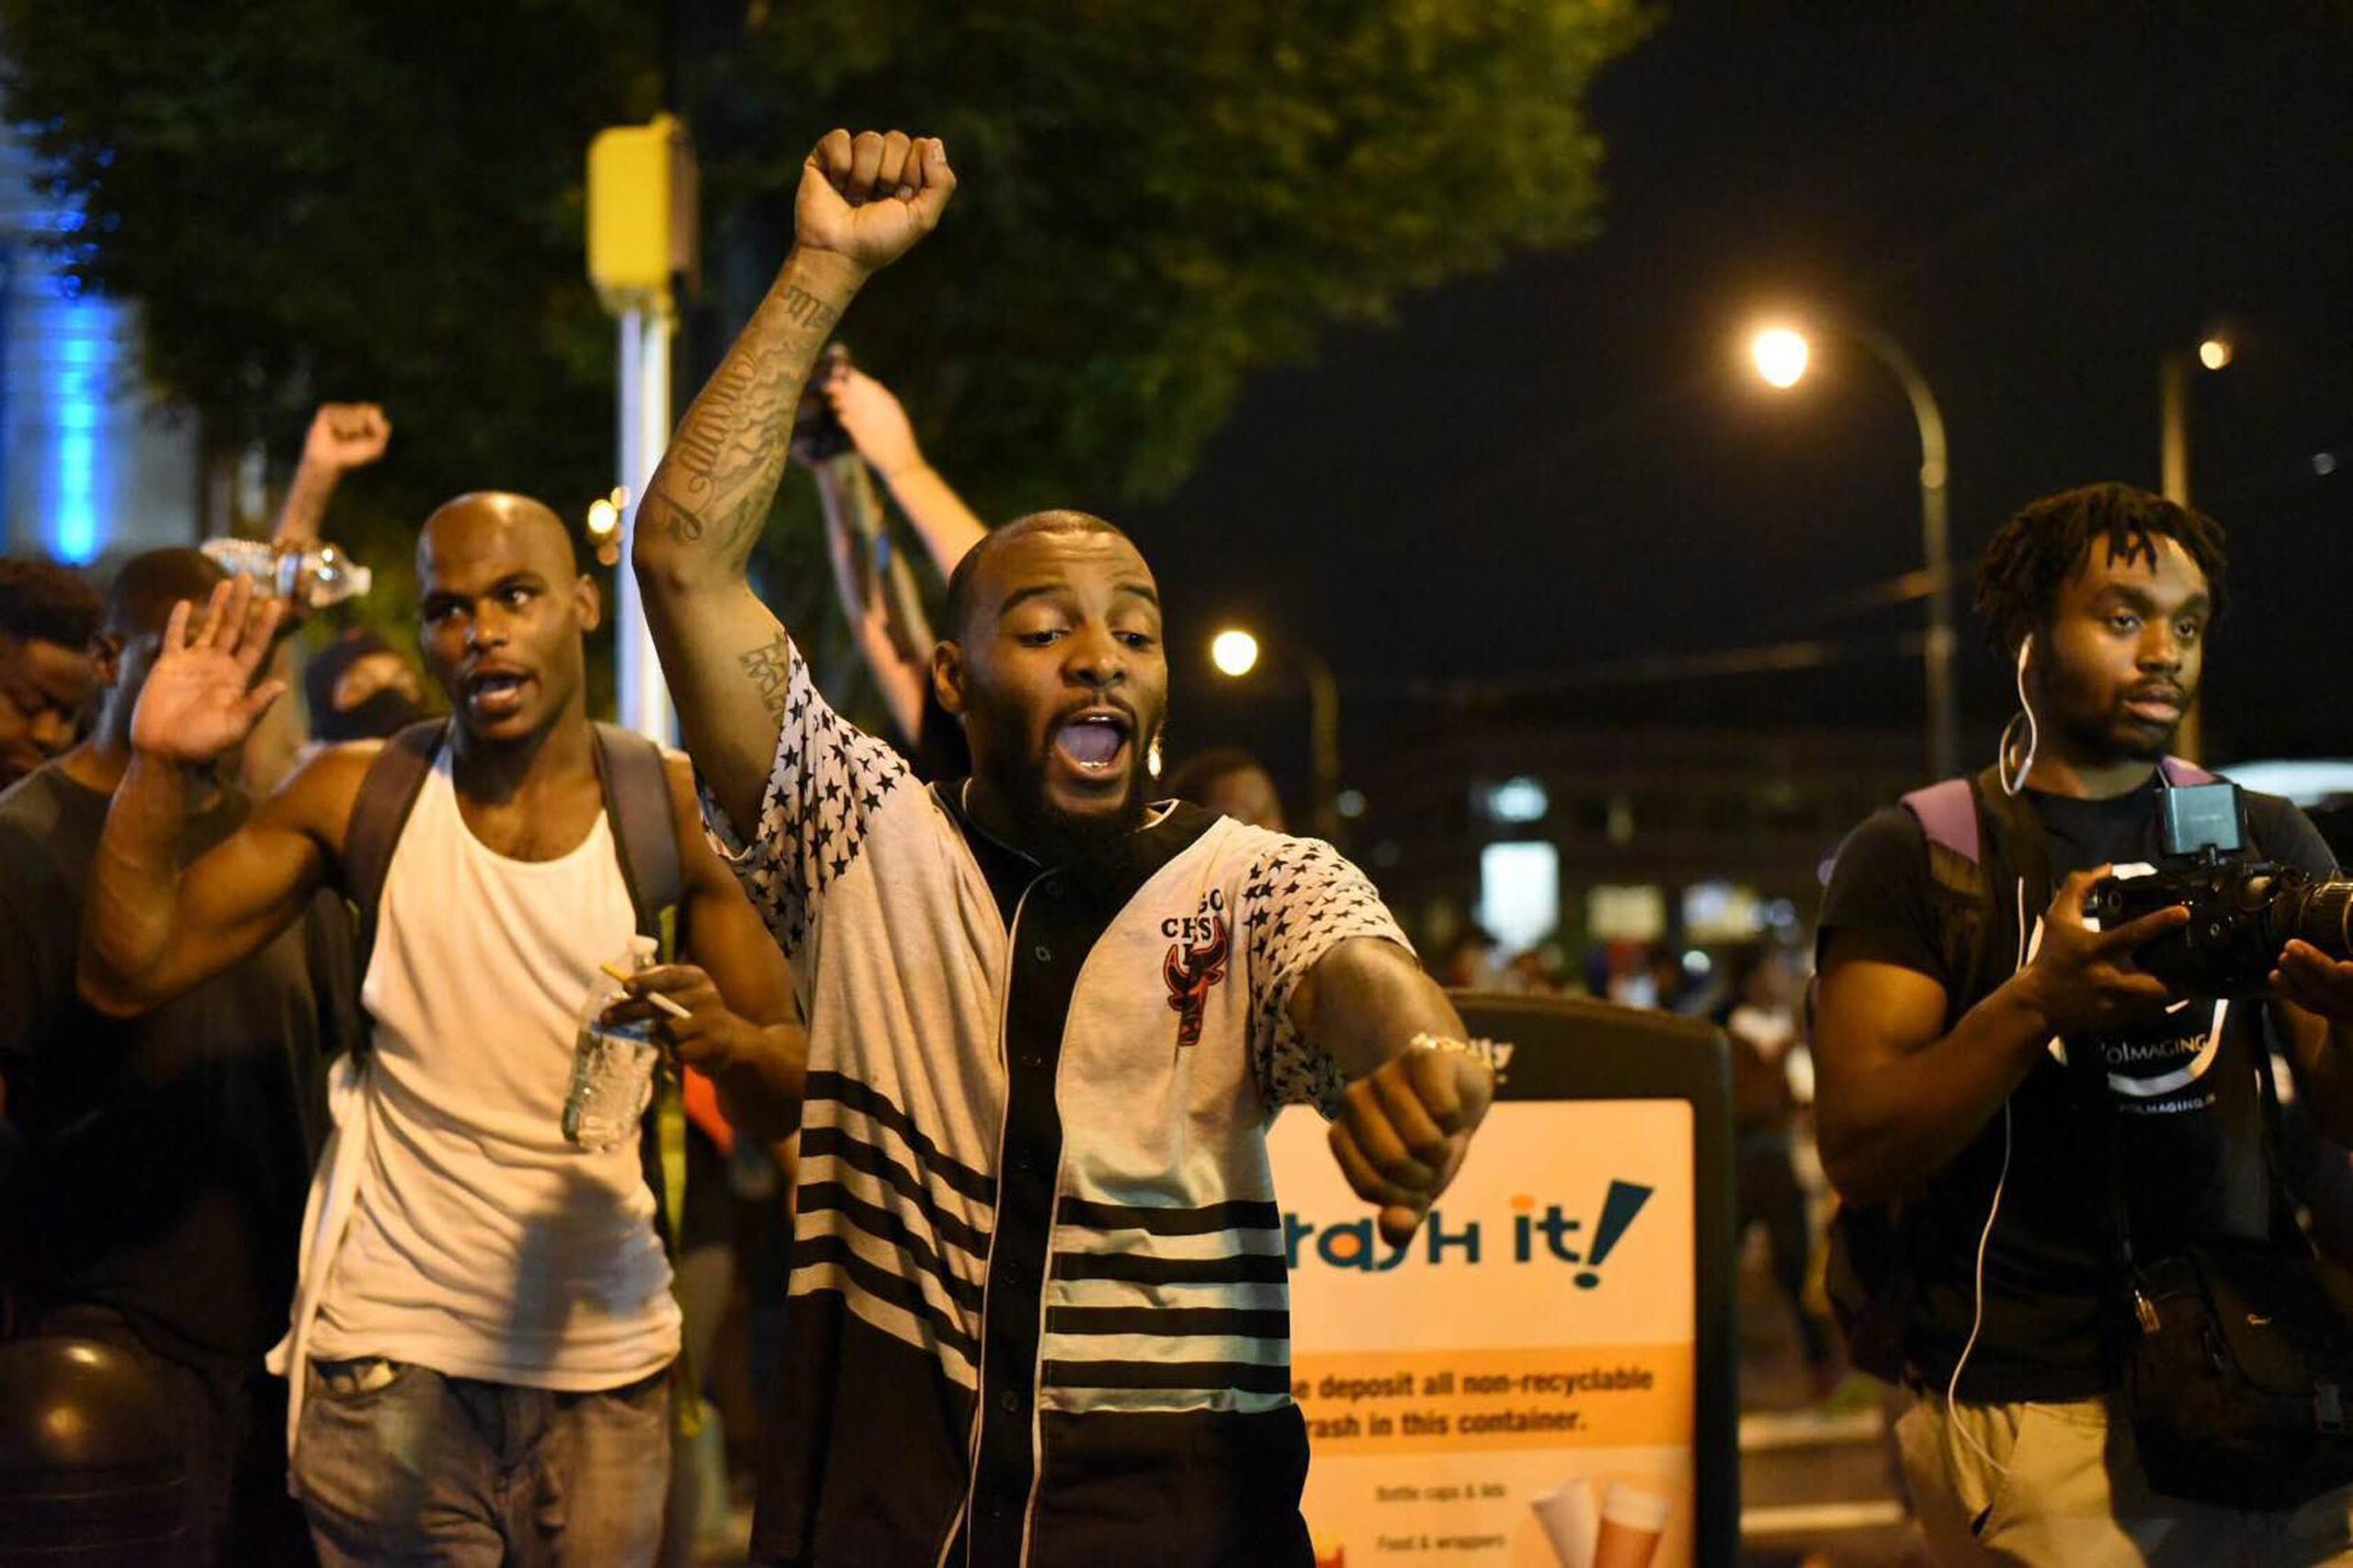 Decenas de personas se manifestaron la pasada noche en Brooklyn Center, un barrio de la ciudad de Mineápolis, tras conocerse la muerte de un conductor de raza negra a manos de un policía, informaron medios locales.